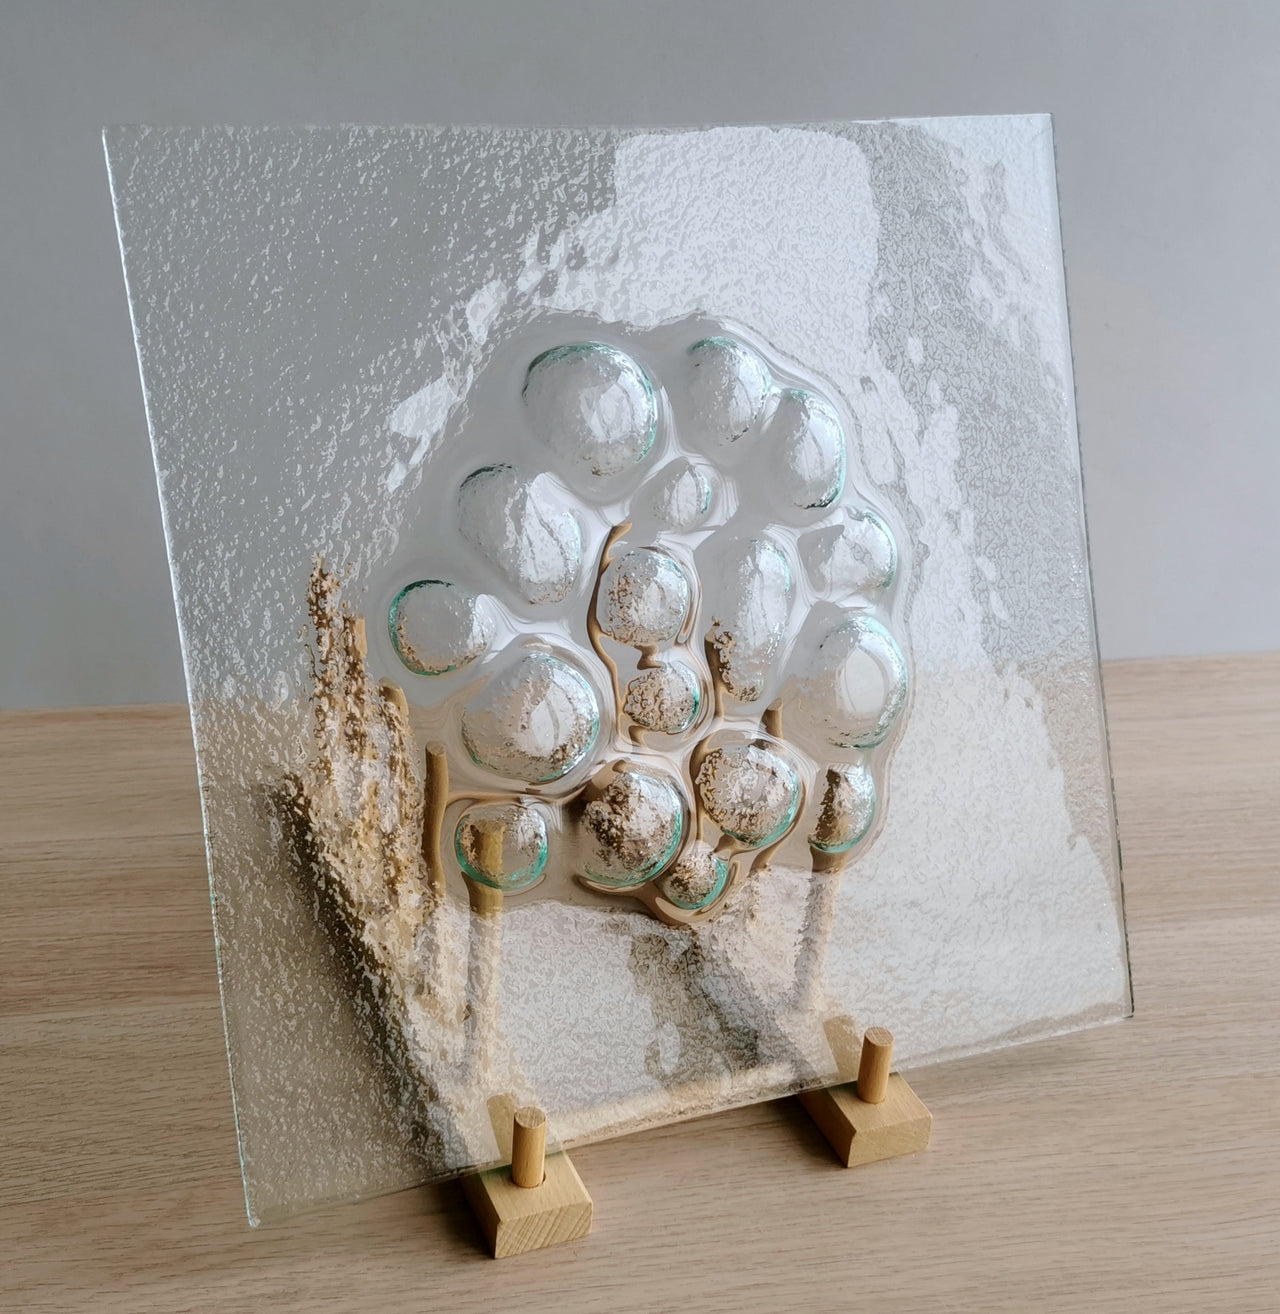 Minimalist Transparent Fused Glass Rocks Platter. Artistic Clear Glass Platter - 12"x12" (30,5cm.x30,5cm.)